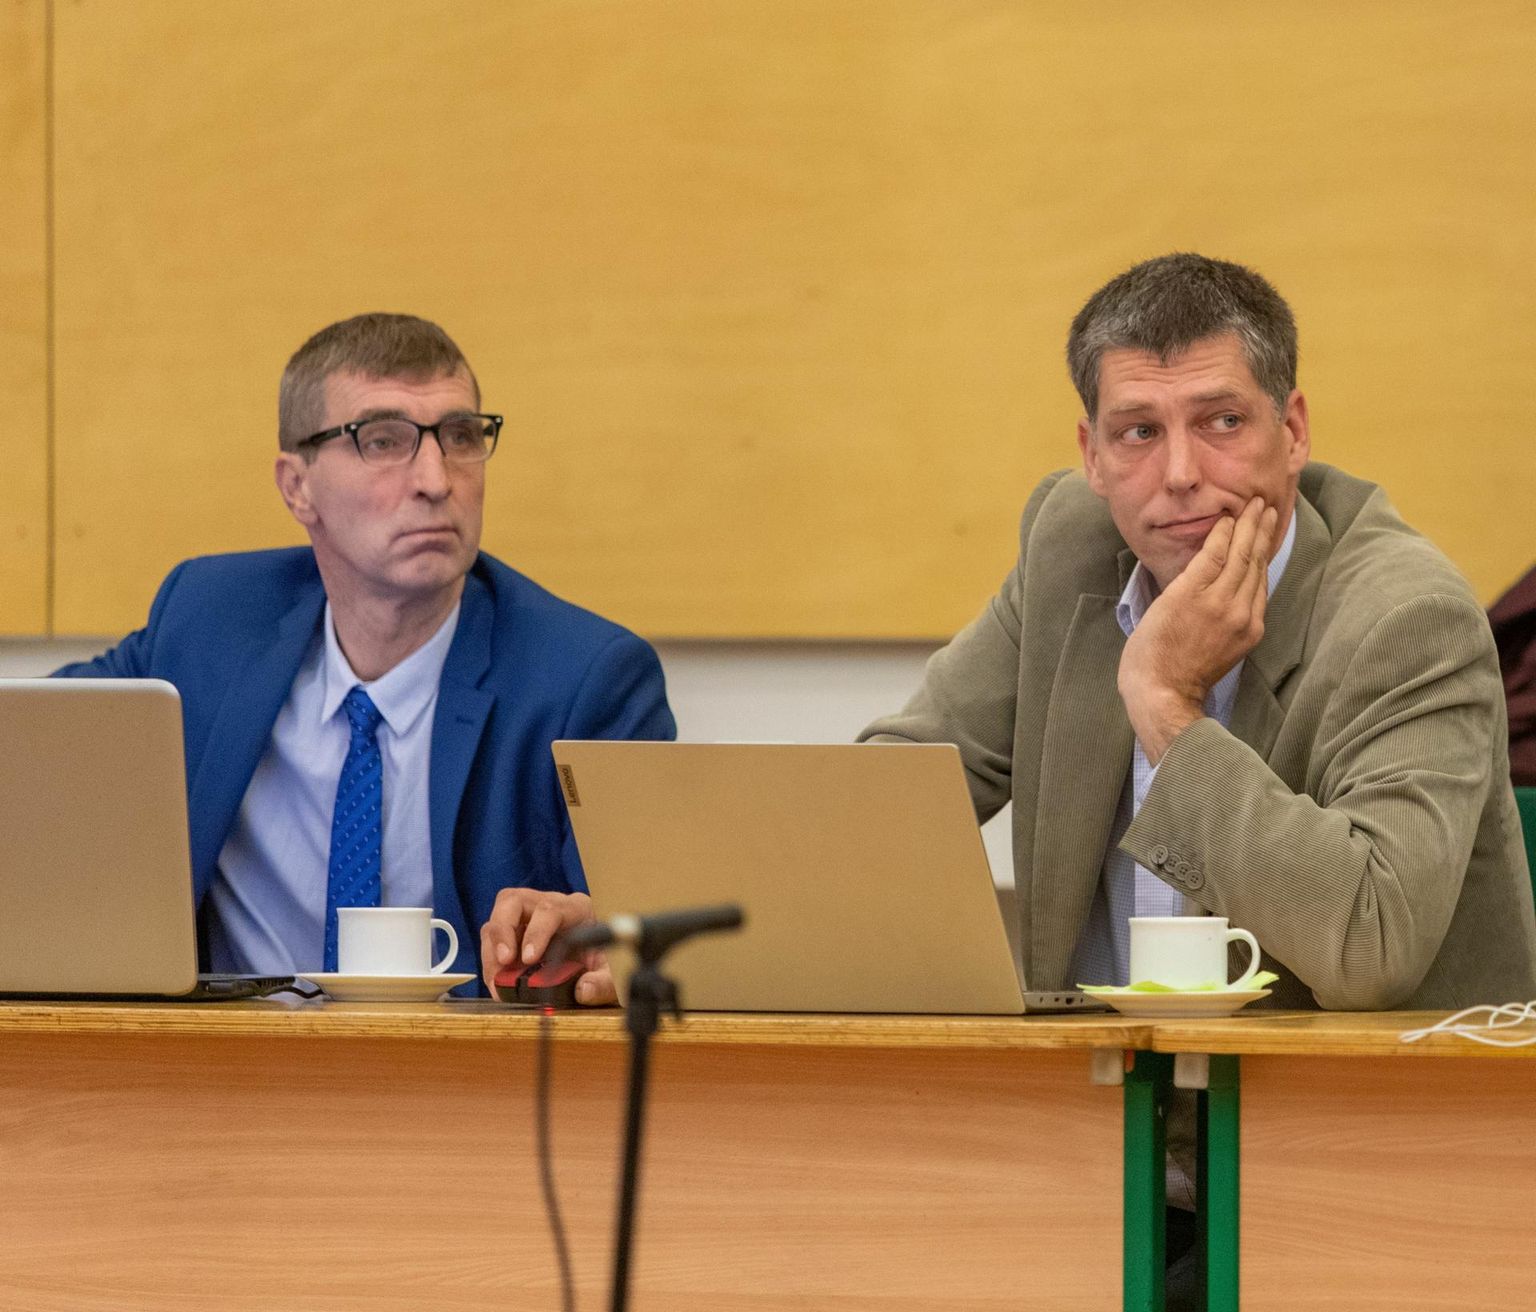 Põhja-Sakala volikogus liikusid Eesti Konservatiivse Rahvaerakonna nüüdsed eksliikmed Margus Ojaste (vasakul) ja Mait Rand eri suundades eelmisest sügisest. Omavahelisi suhteid pidasid nad heaks, aga paljudes küsimustes olid volikogus eri meelt. Praegu pole kumbki erakonna liige.